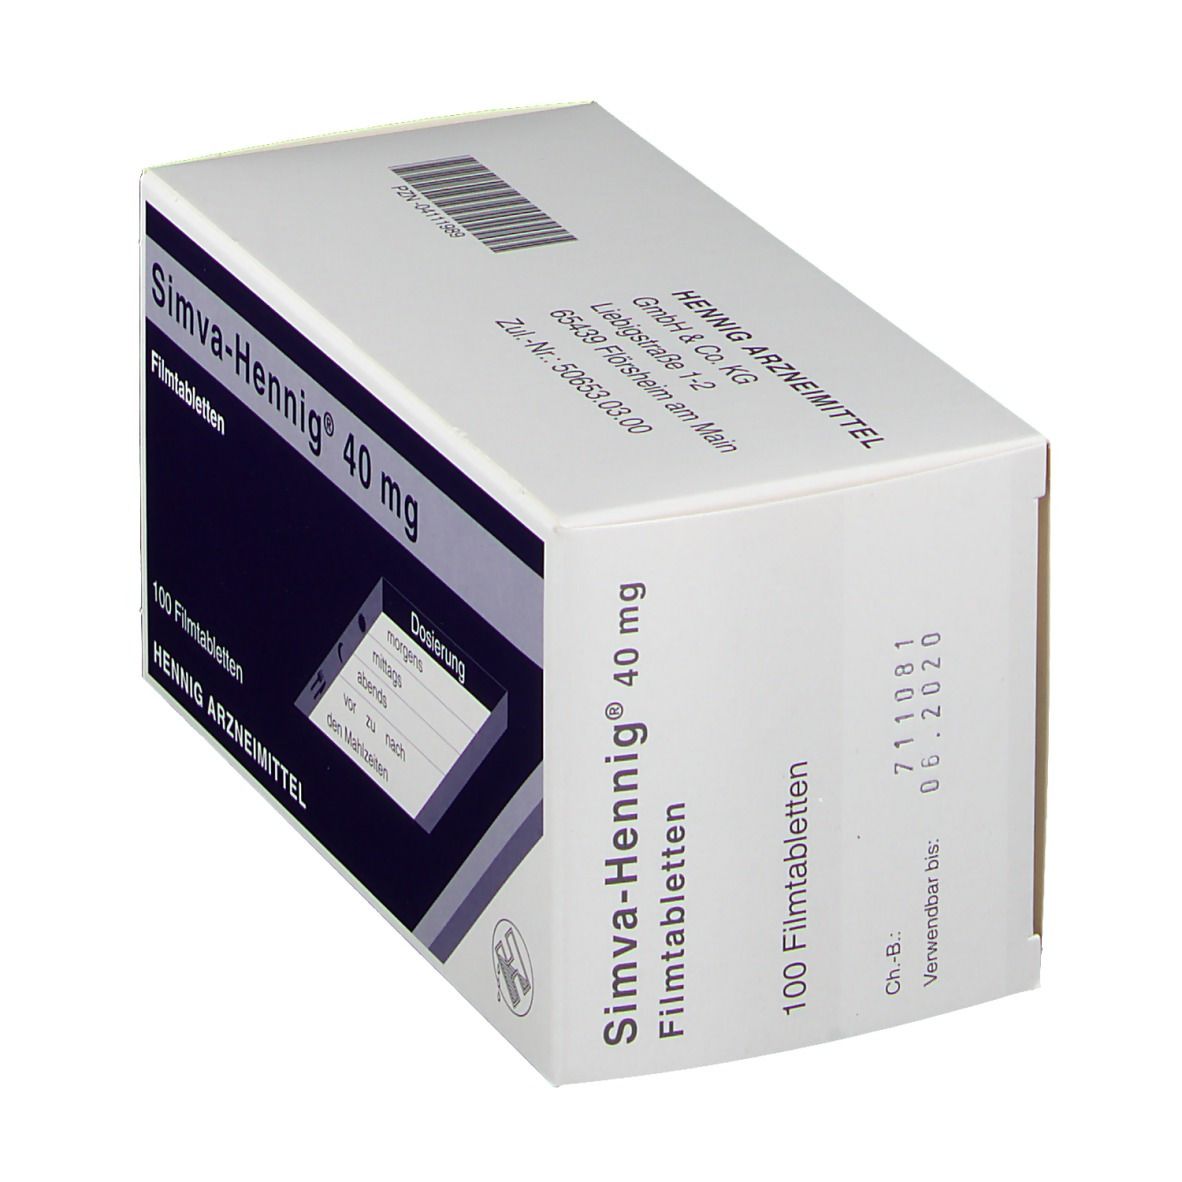 Simva-Hennig® 40 mg